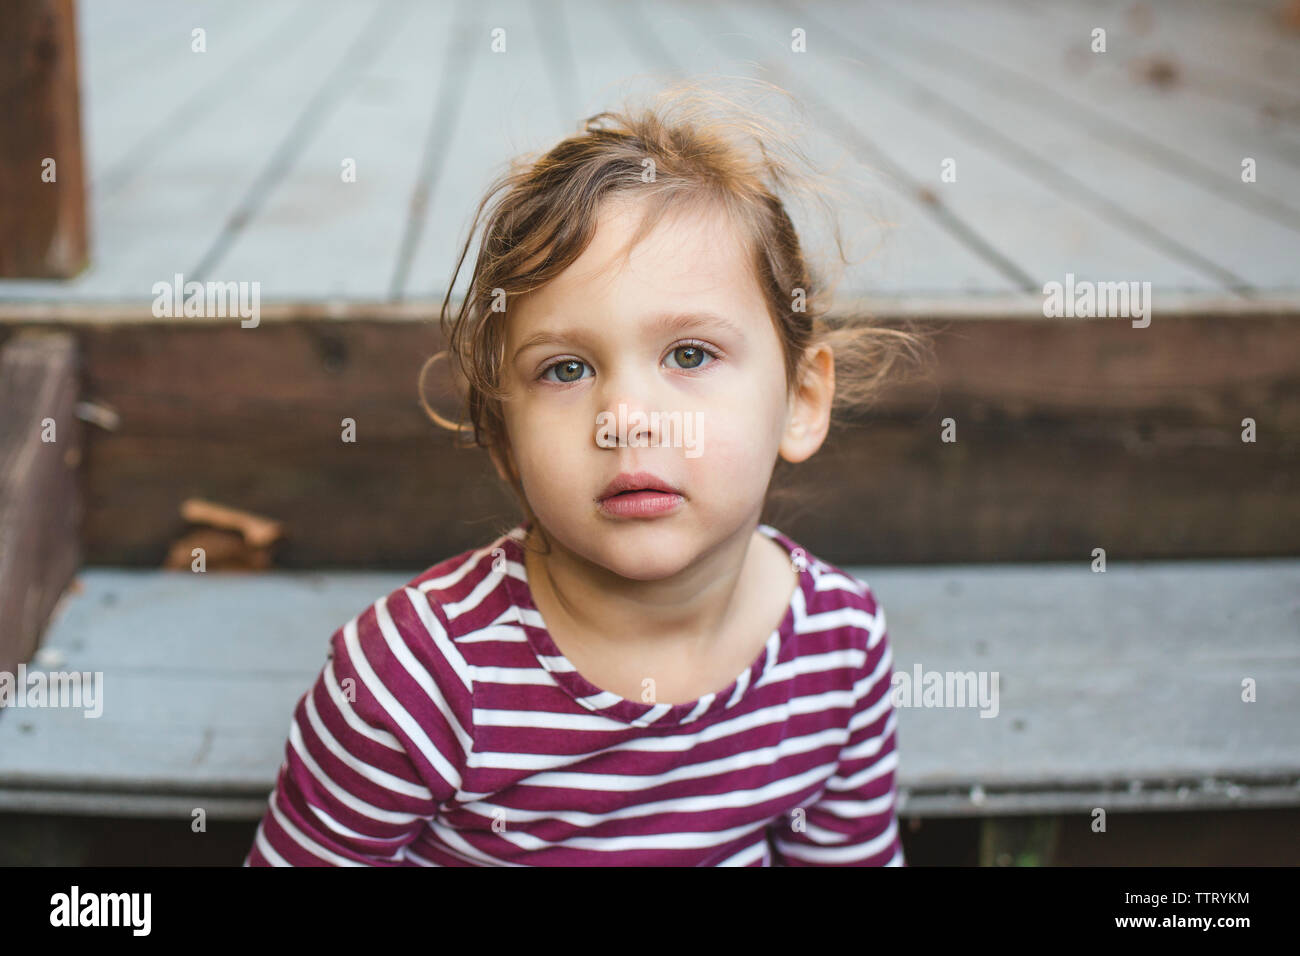 Eine schöne Kleinkind Mädchen mit wispy Locken schaut direkt in die Kamera Stockfoto